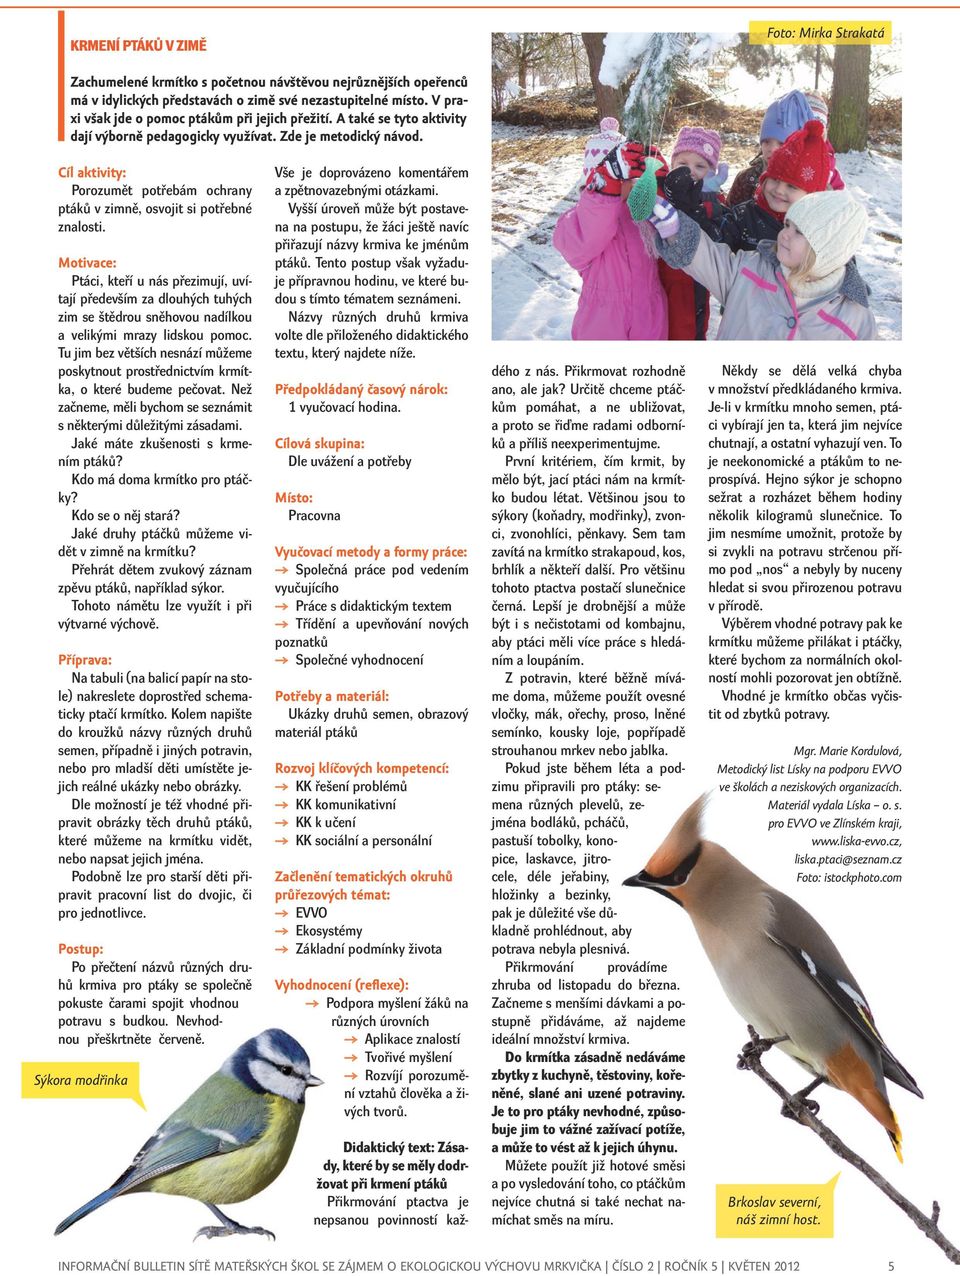 Cíl aktivity: Porozumět potřebám ochrany ptáků v zimně, osvojit si potřebné znalosti.